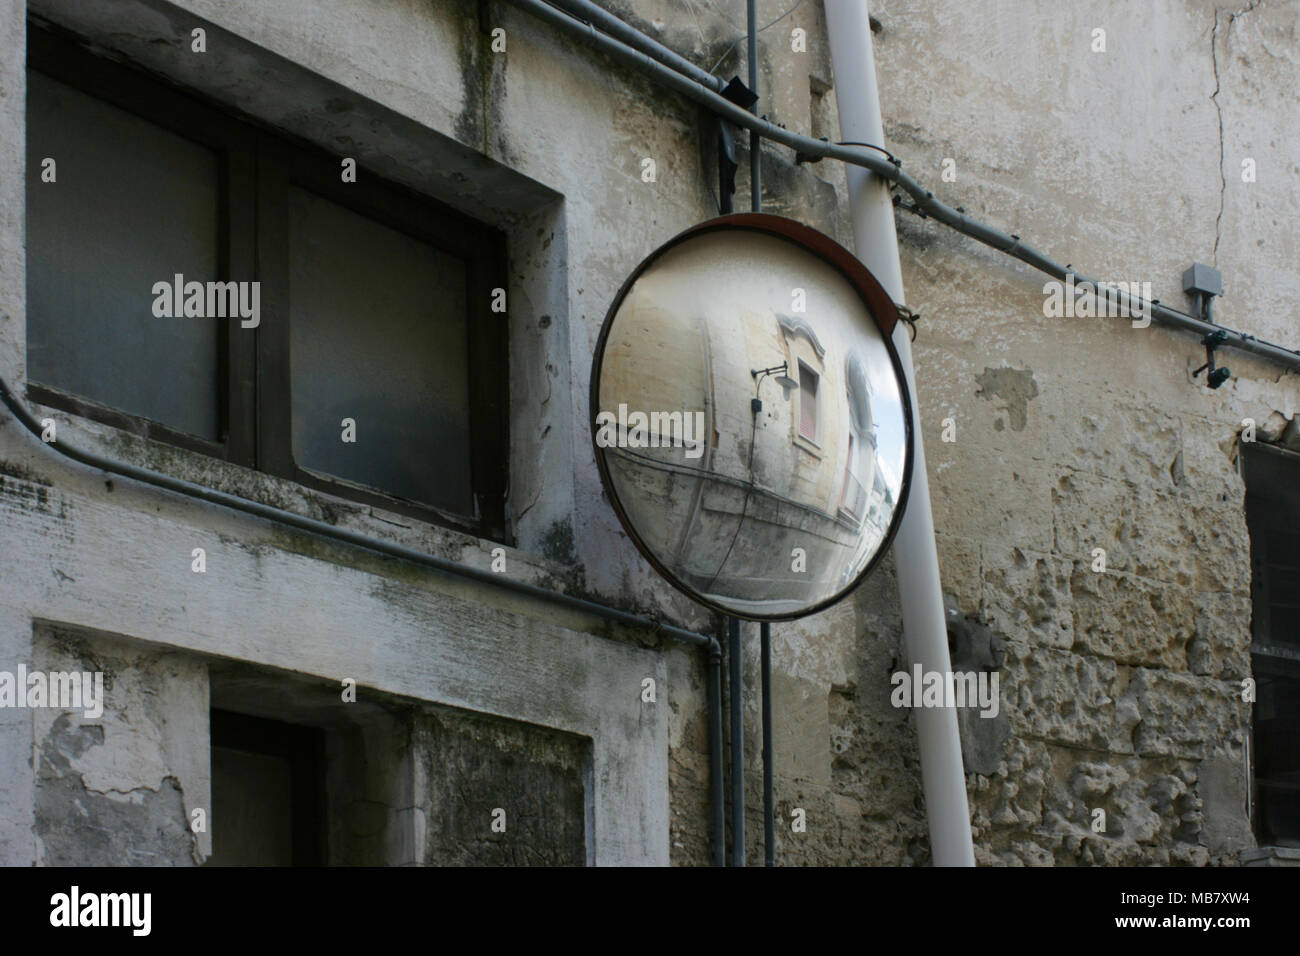 Un detalle arquitectónico y espejos en vista del lado opuesto de la calle se muestra en un punto ciego espejo. Matera, Italia Foto de stock